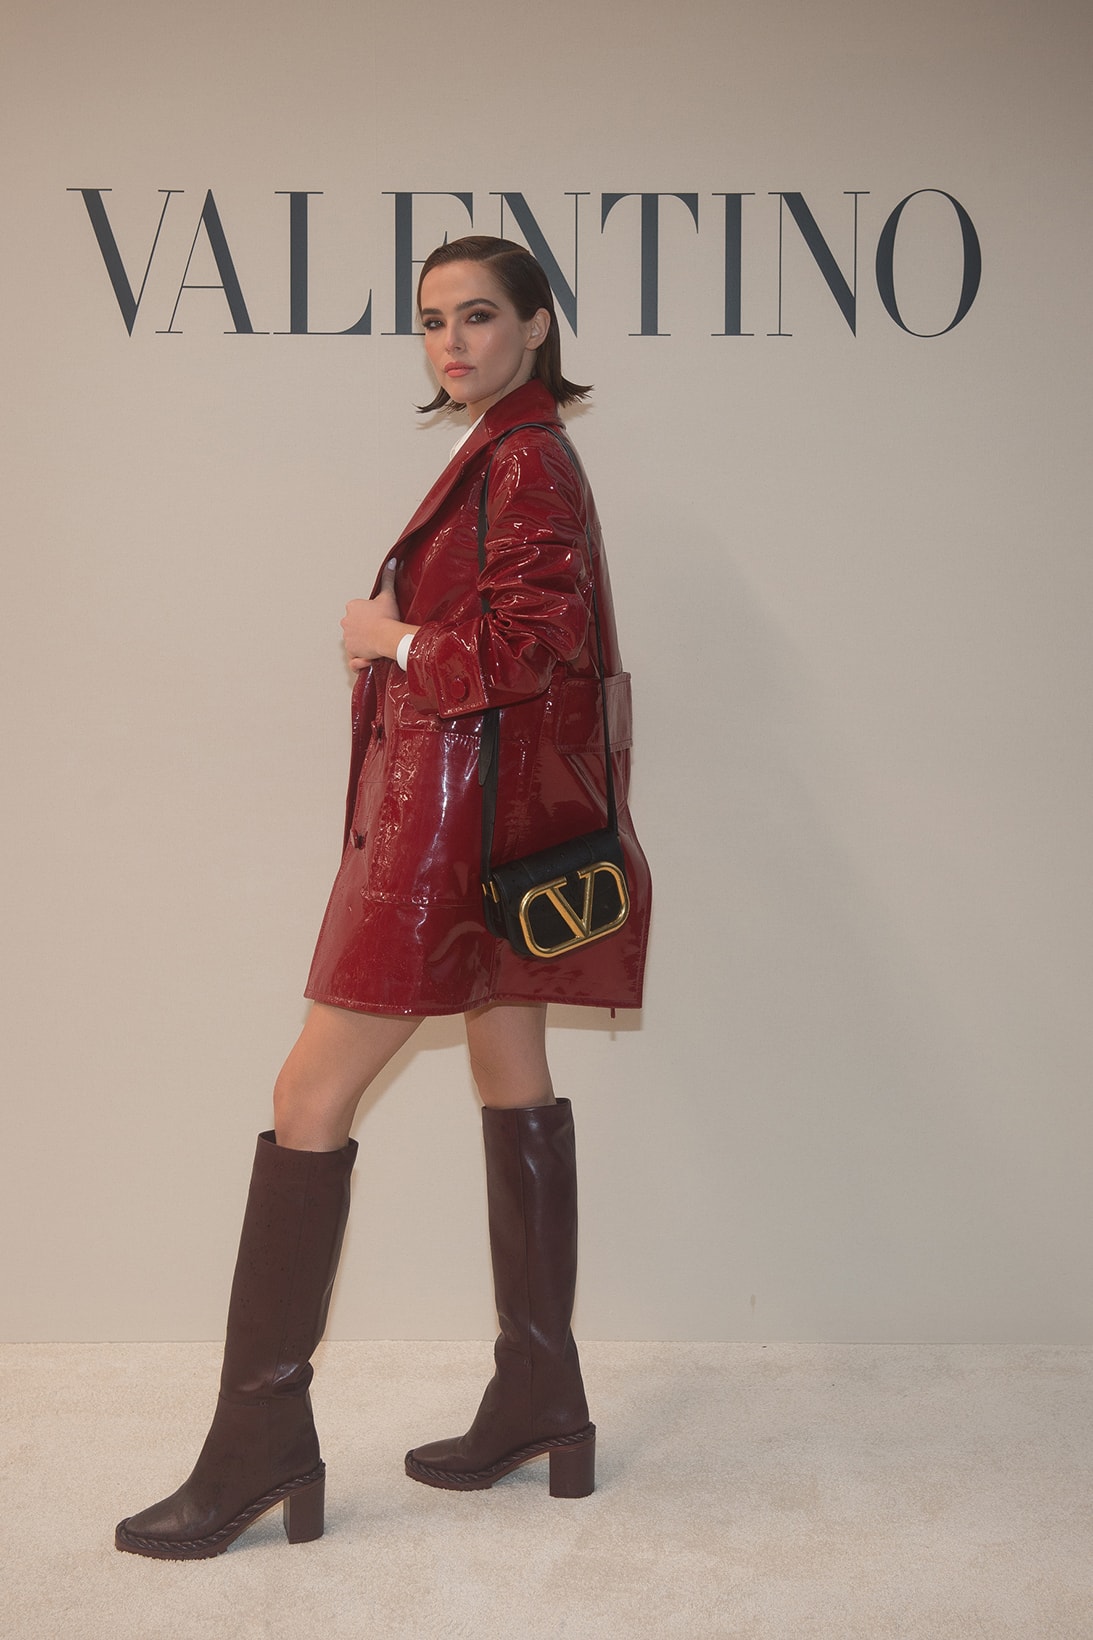 paris fashion week celebrity looks valentino zoey deutch